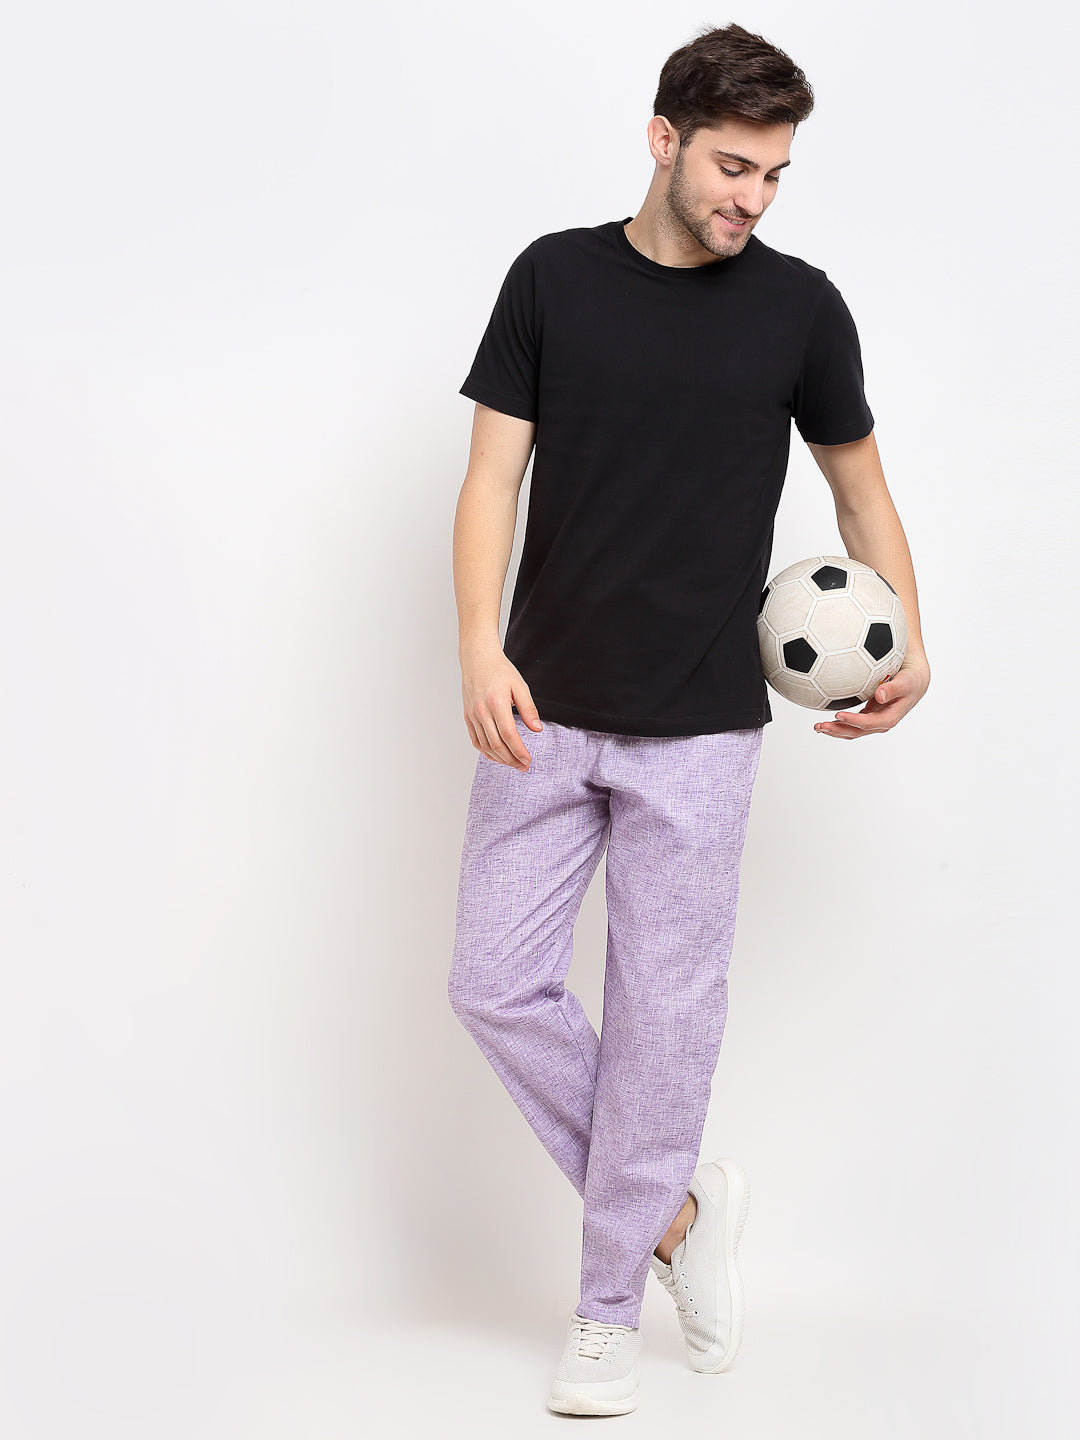 Jainish Men's Purple Linen Cotton Track Pants ( JOG 021Purple ) - Distacart